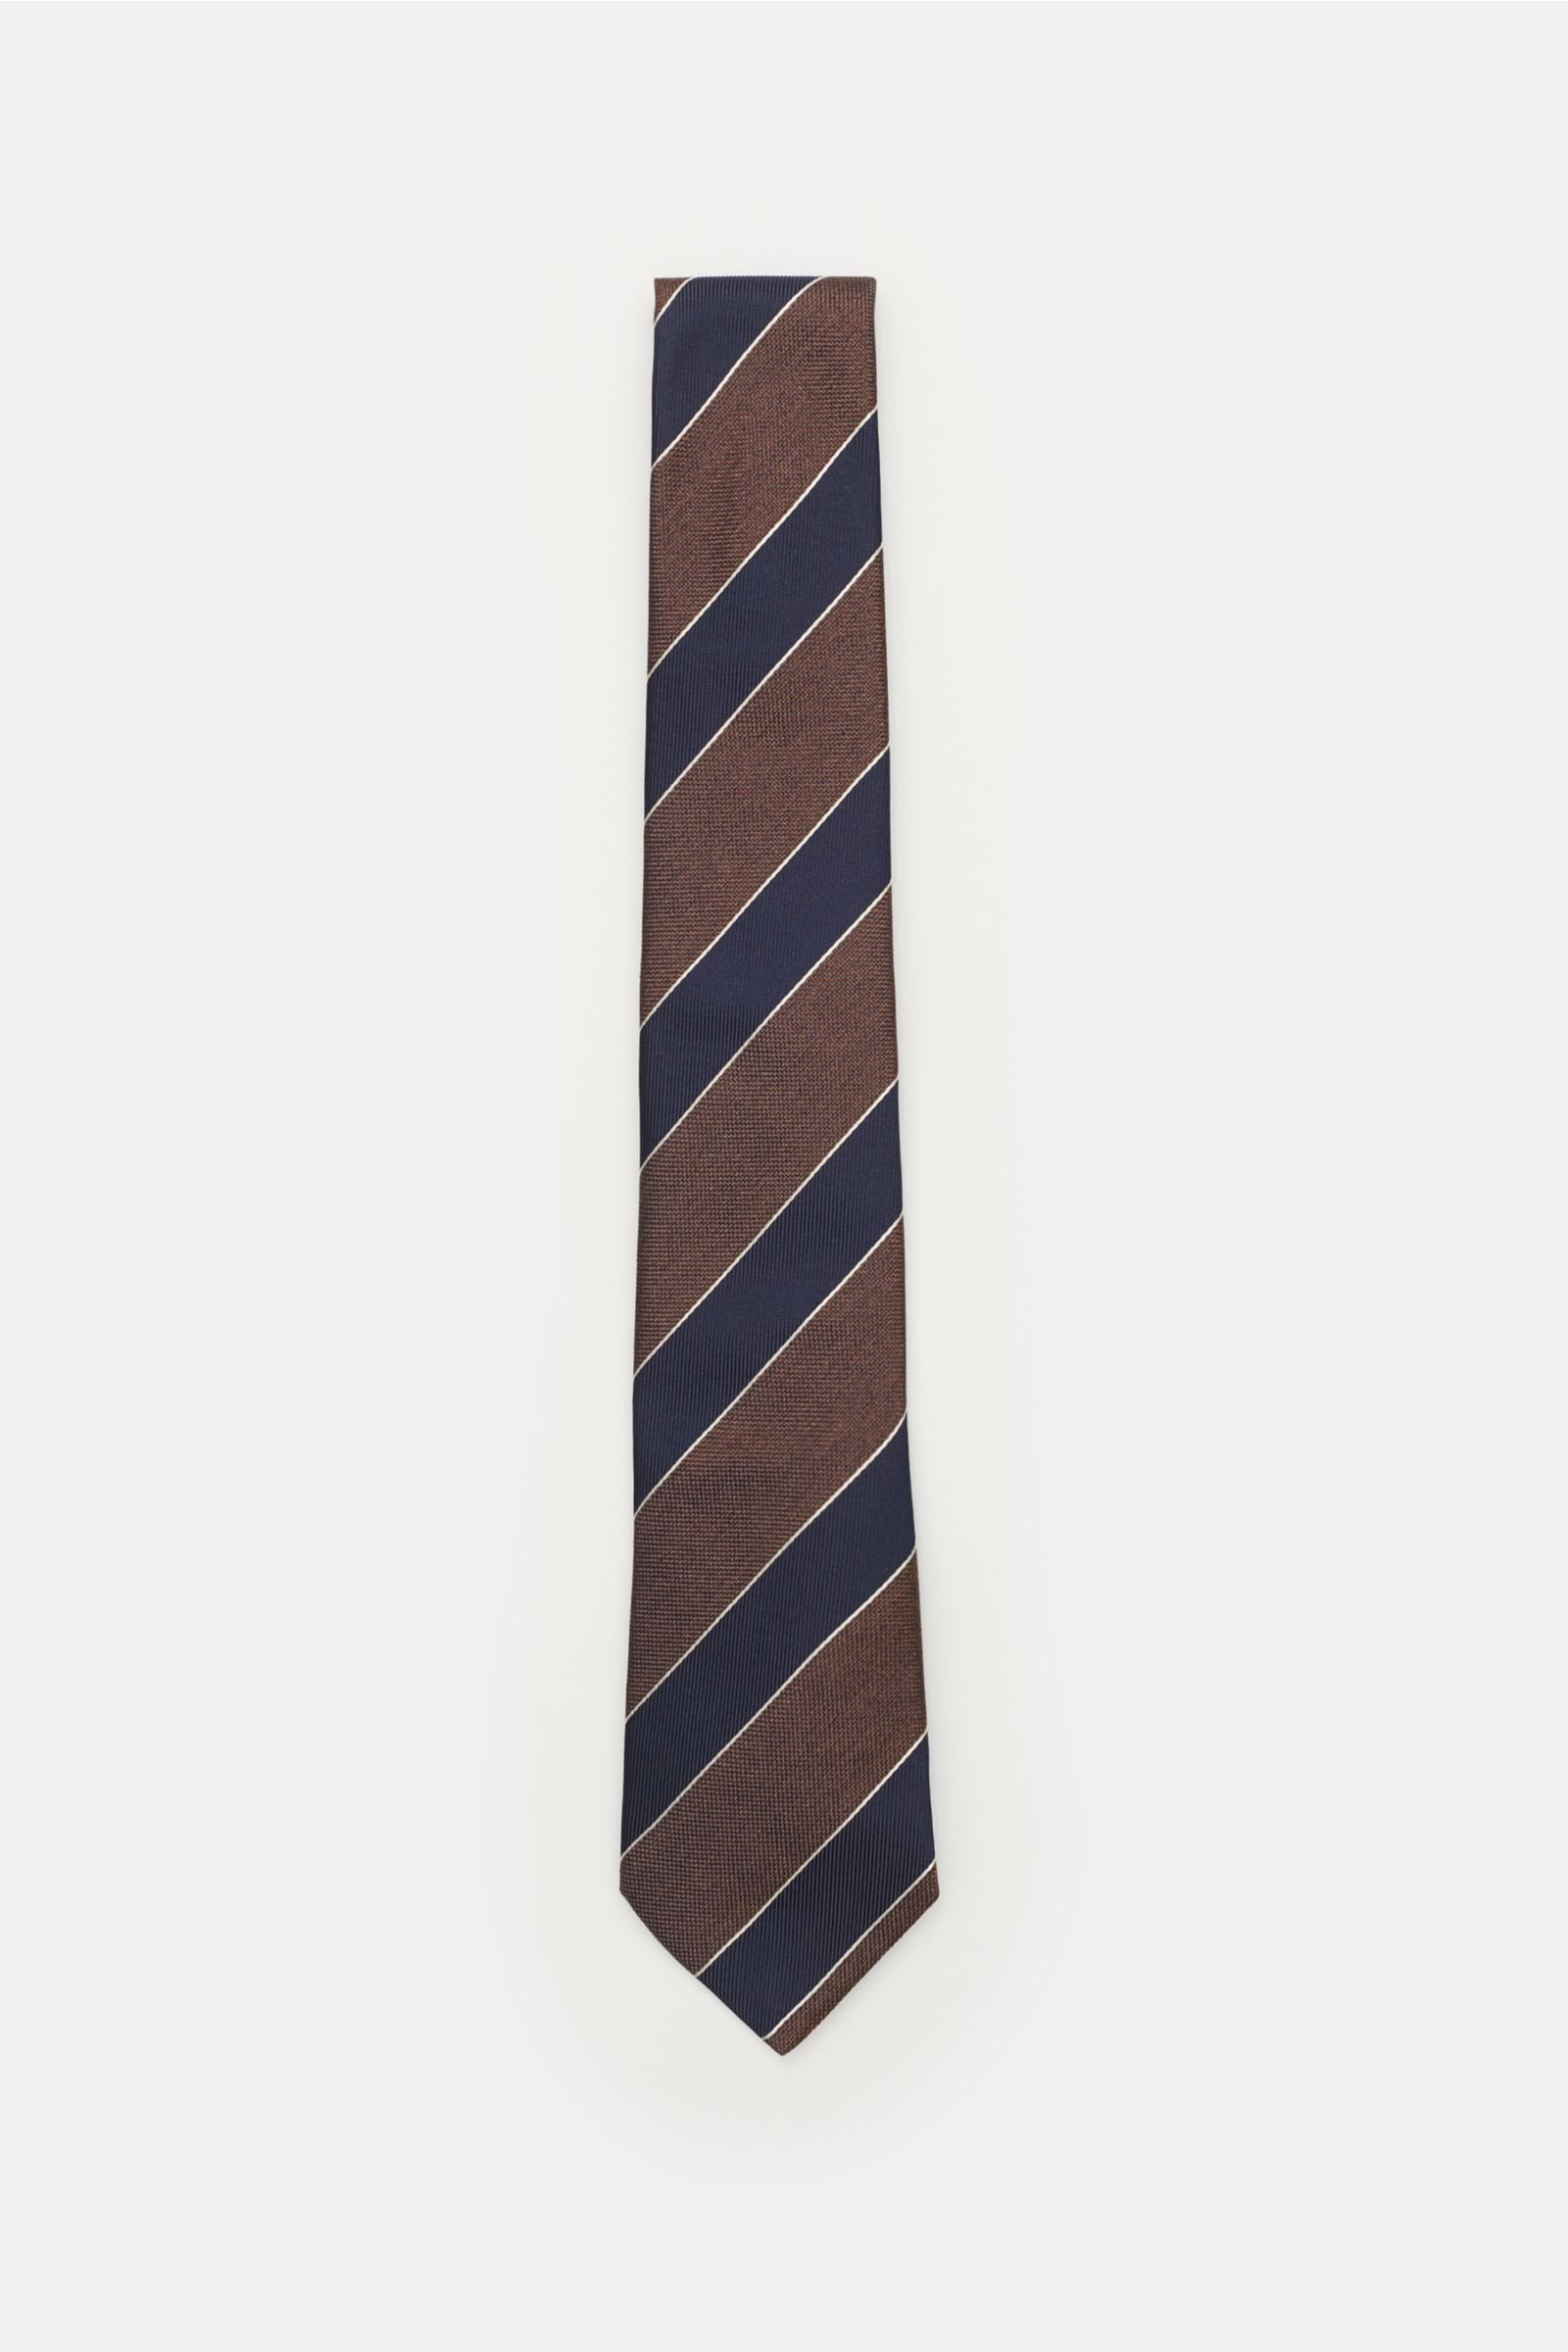 Silk tie dark brown/navy striped